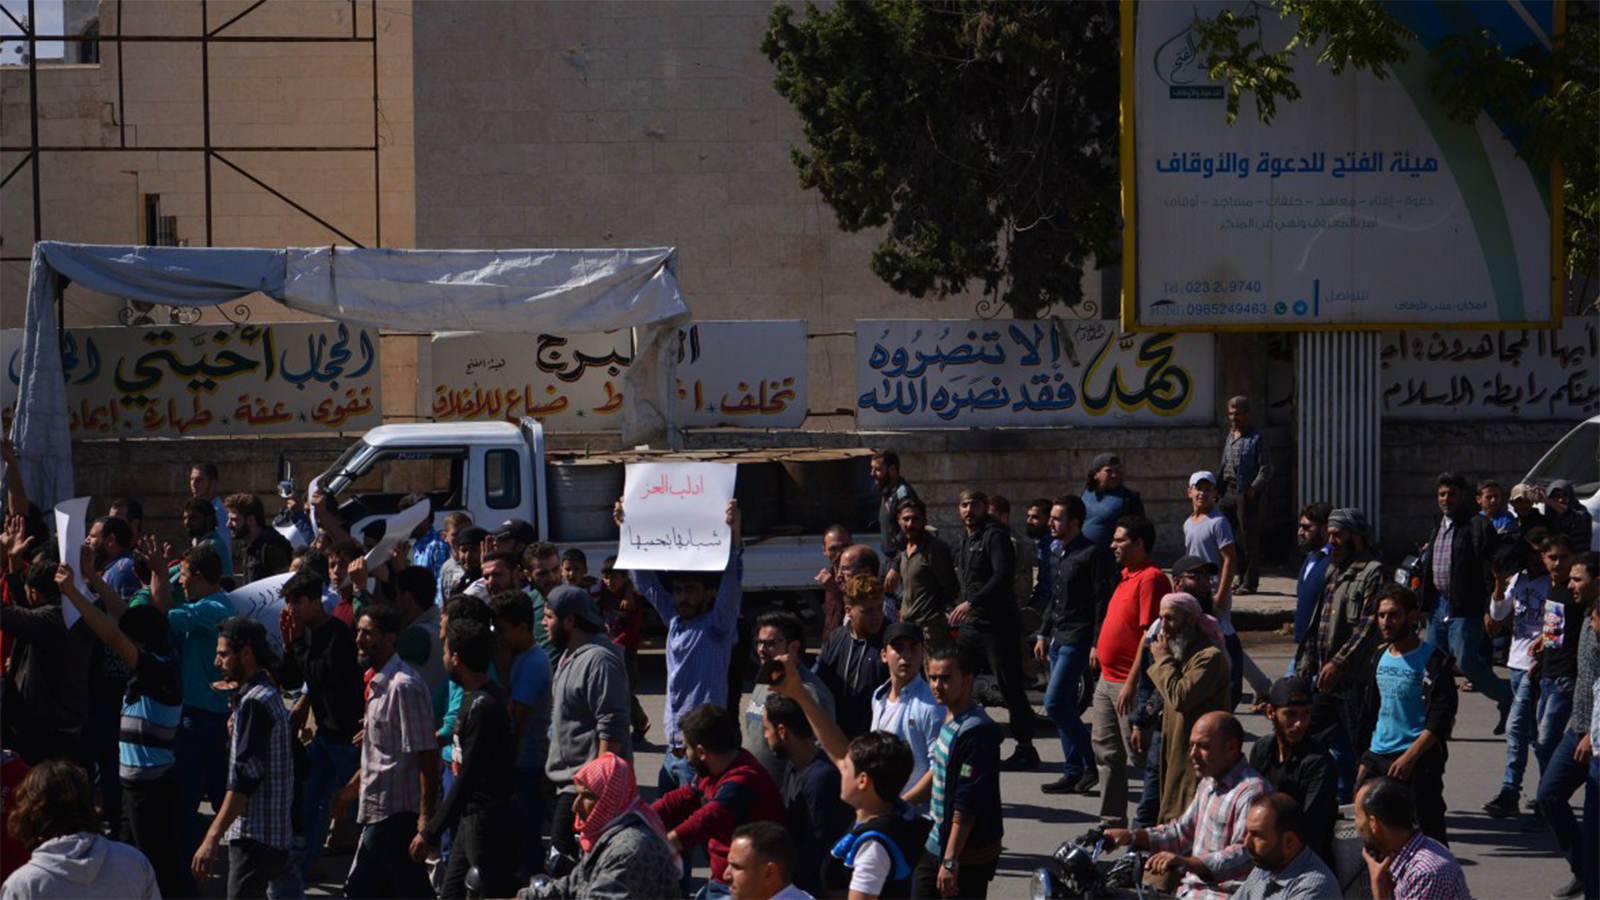 "تحرير الشام": منع الاختلاط أهمّ من قتال النظام؟